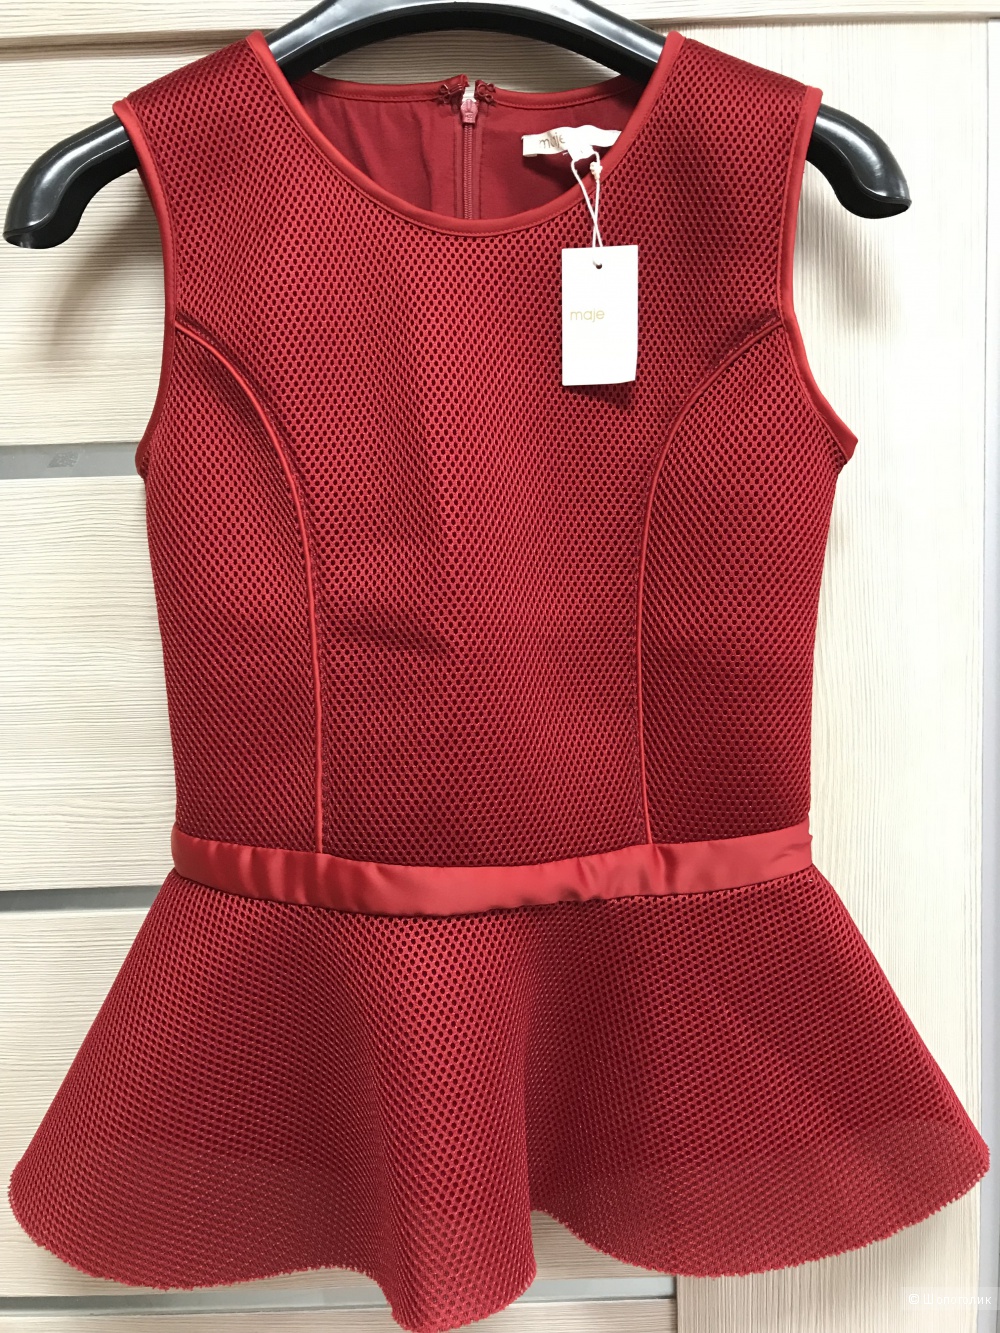 Блуза с баской Maje, размер 1, 40-42 рос